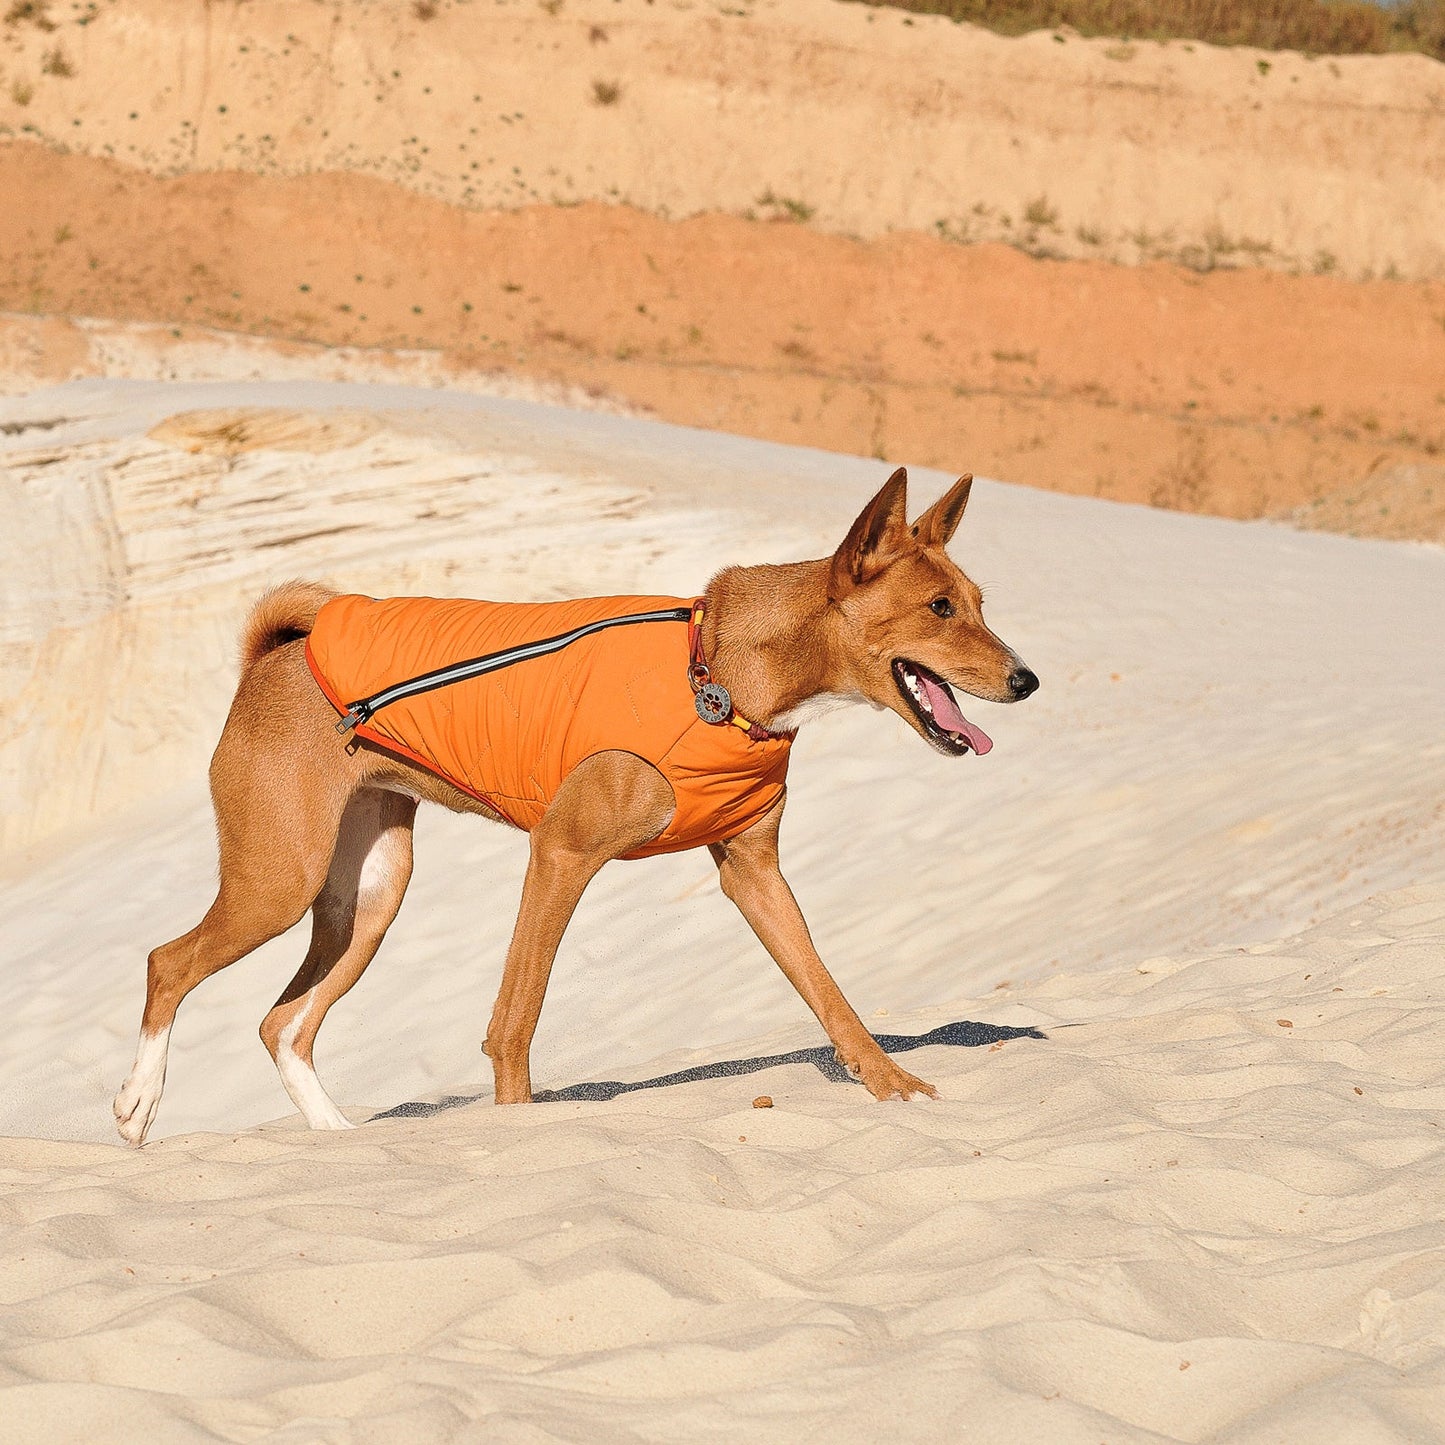 Sustainable Eco-Friendly Dog Jacket / Vest - Made in Ukraine